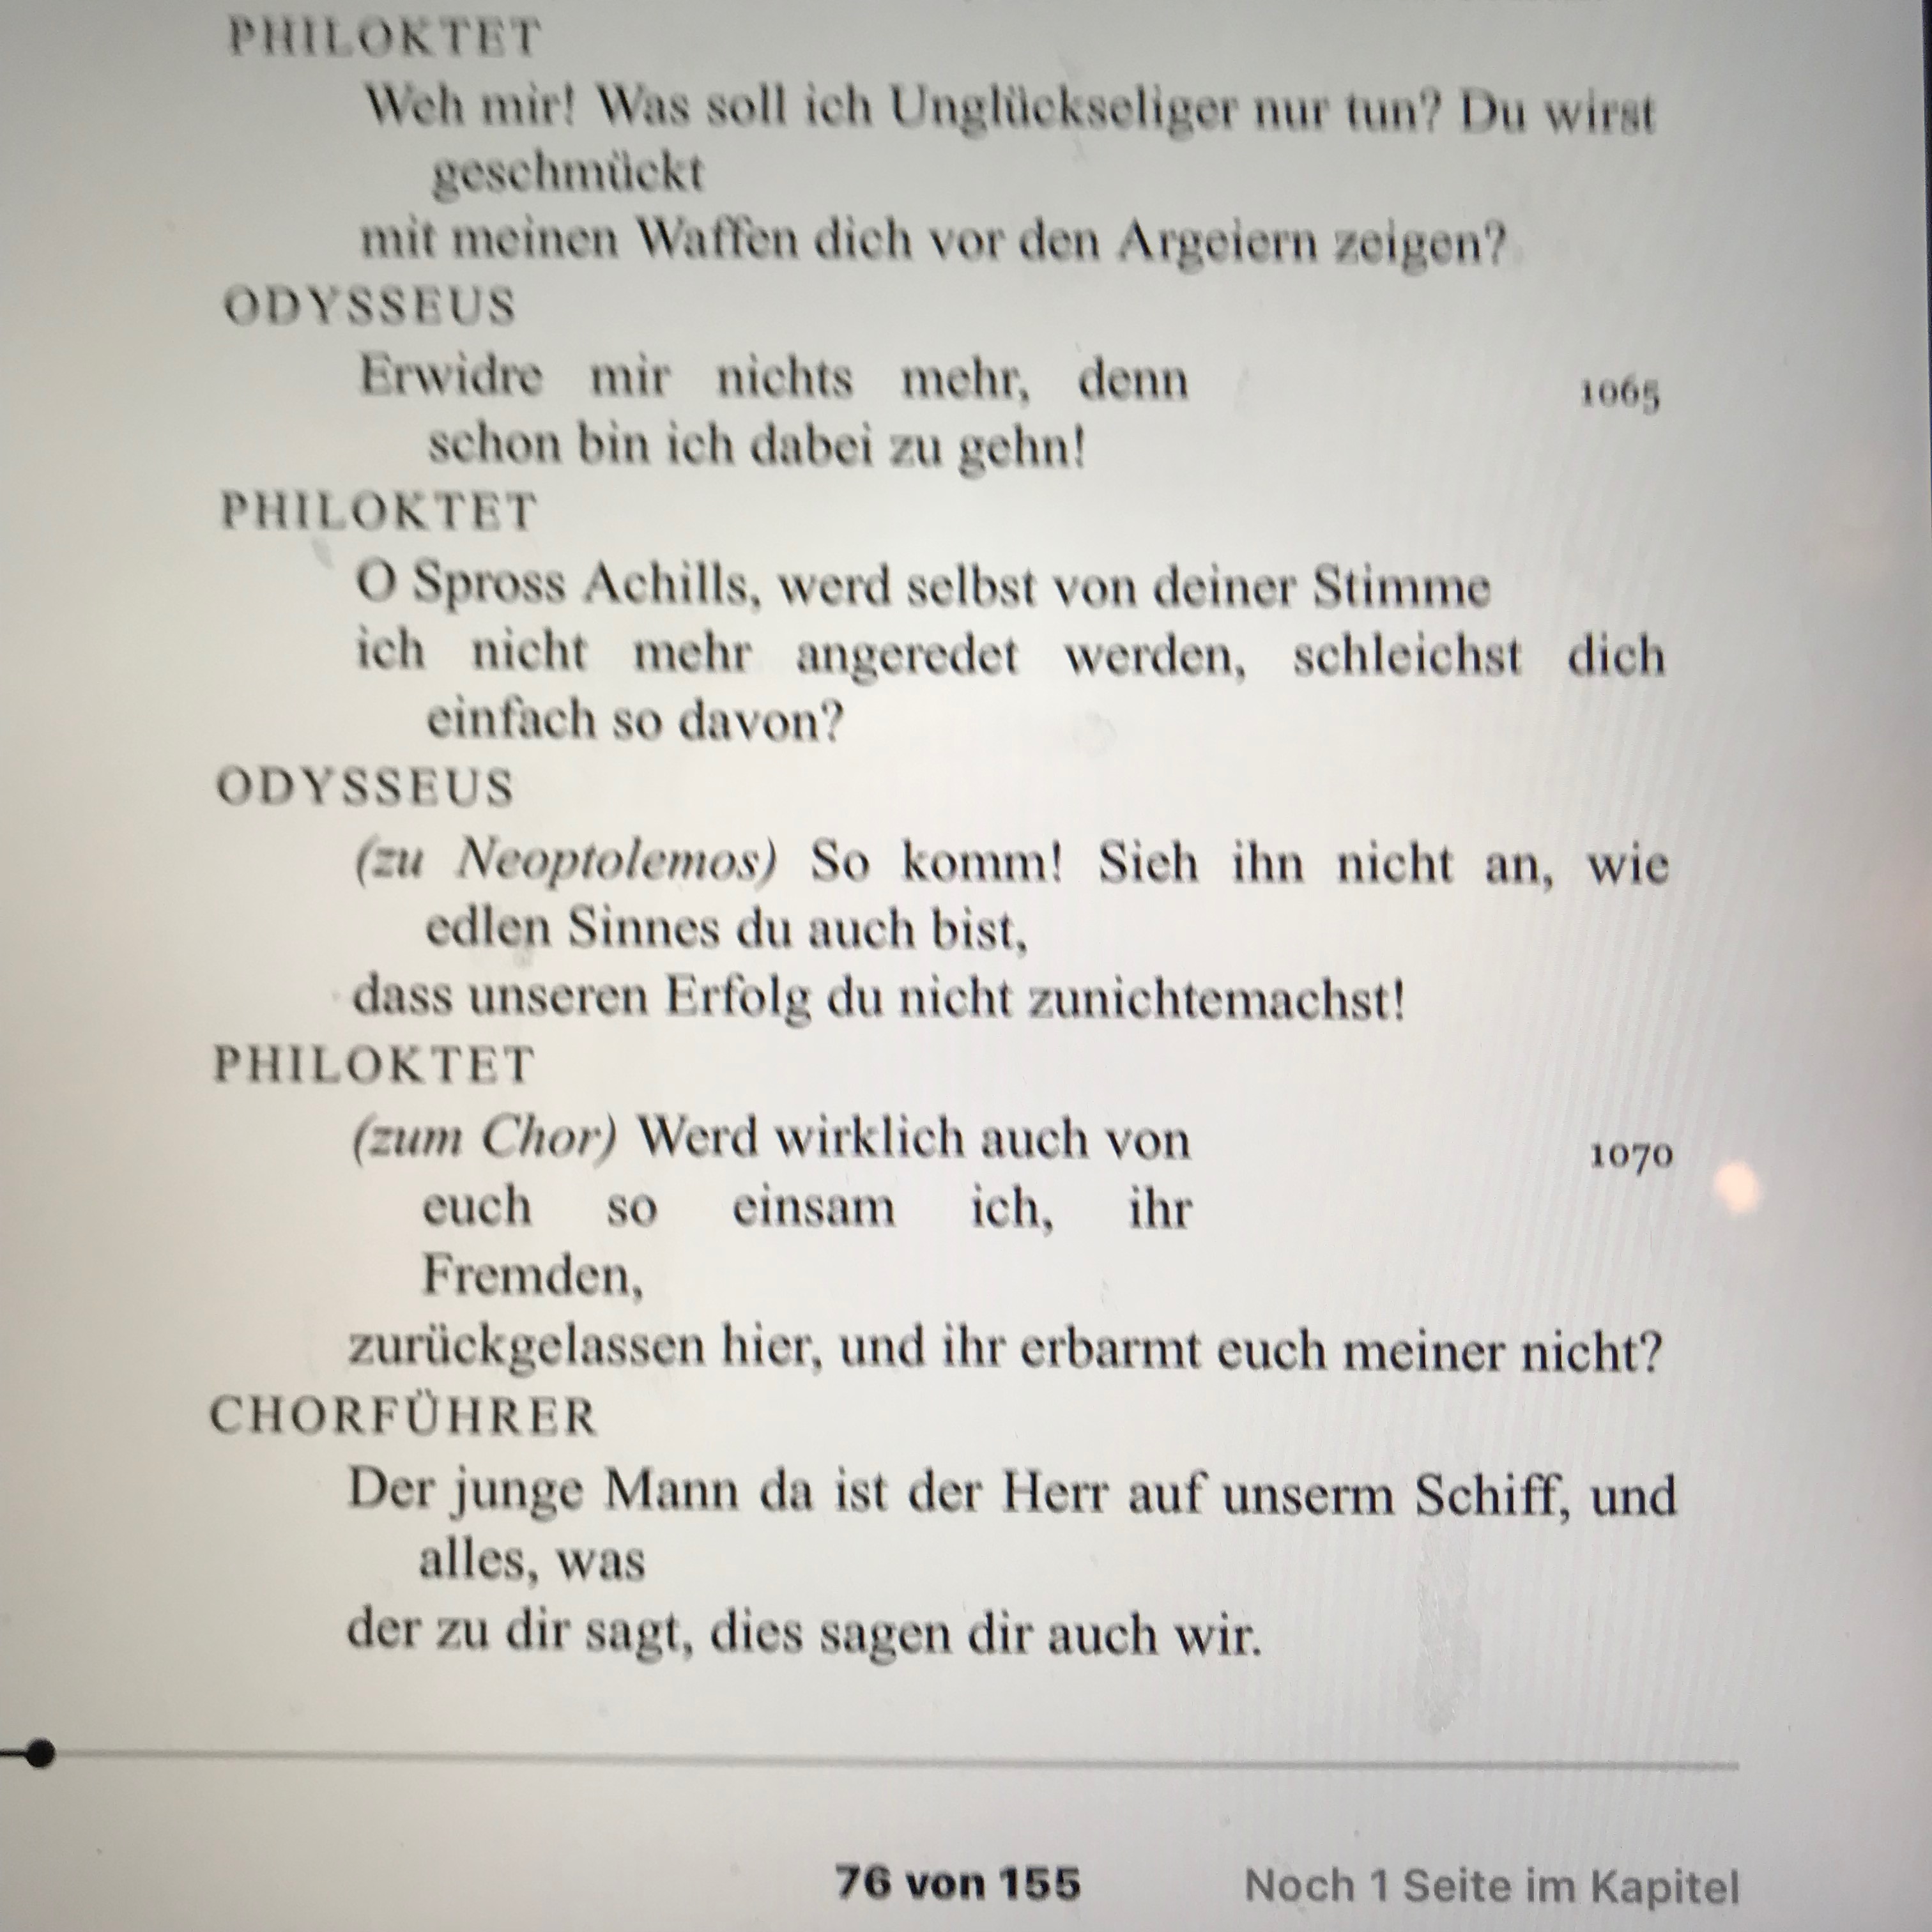 Modernes Schriftbild: der selbe Textauszug in deutscher Übersetzung als eBook, herausgegeben von Diogenes.